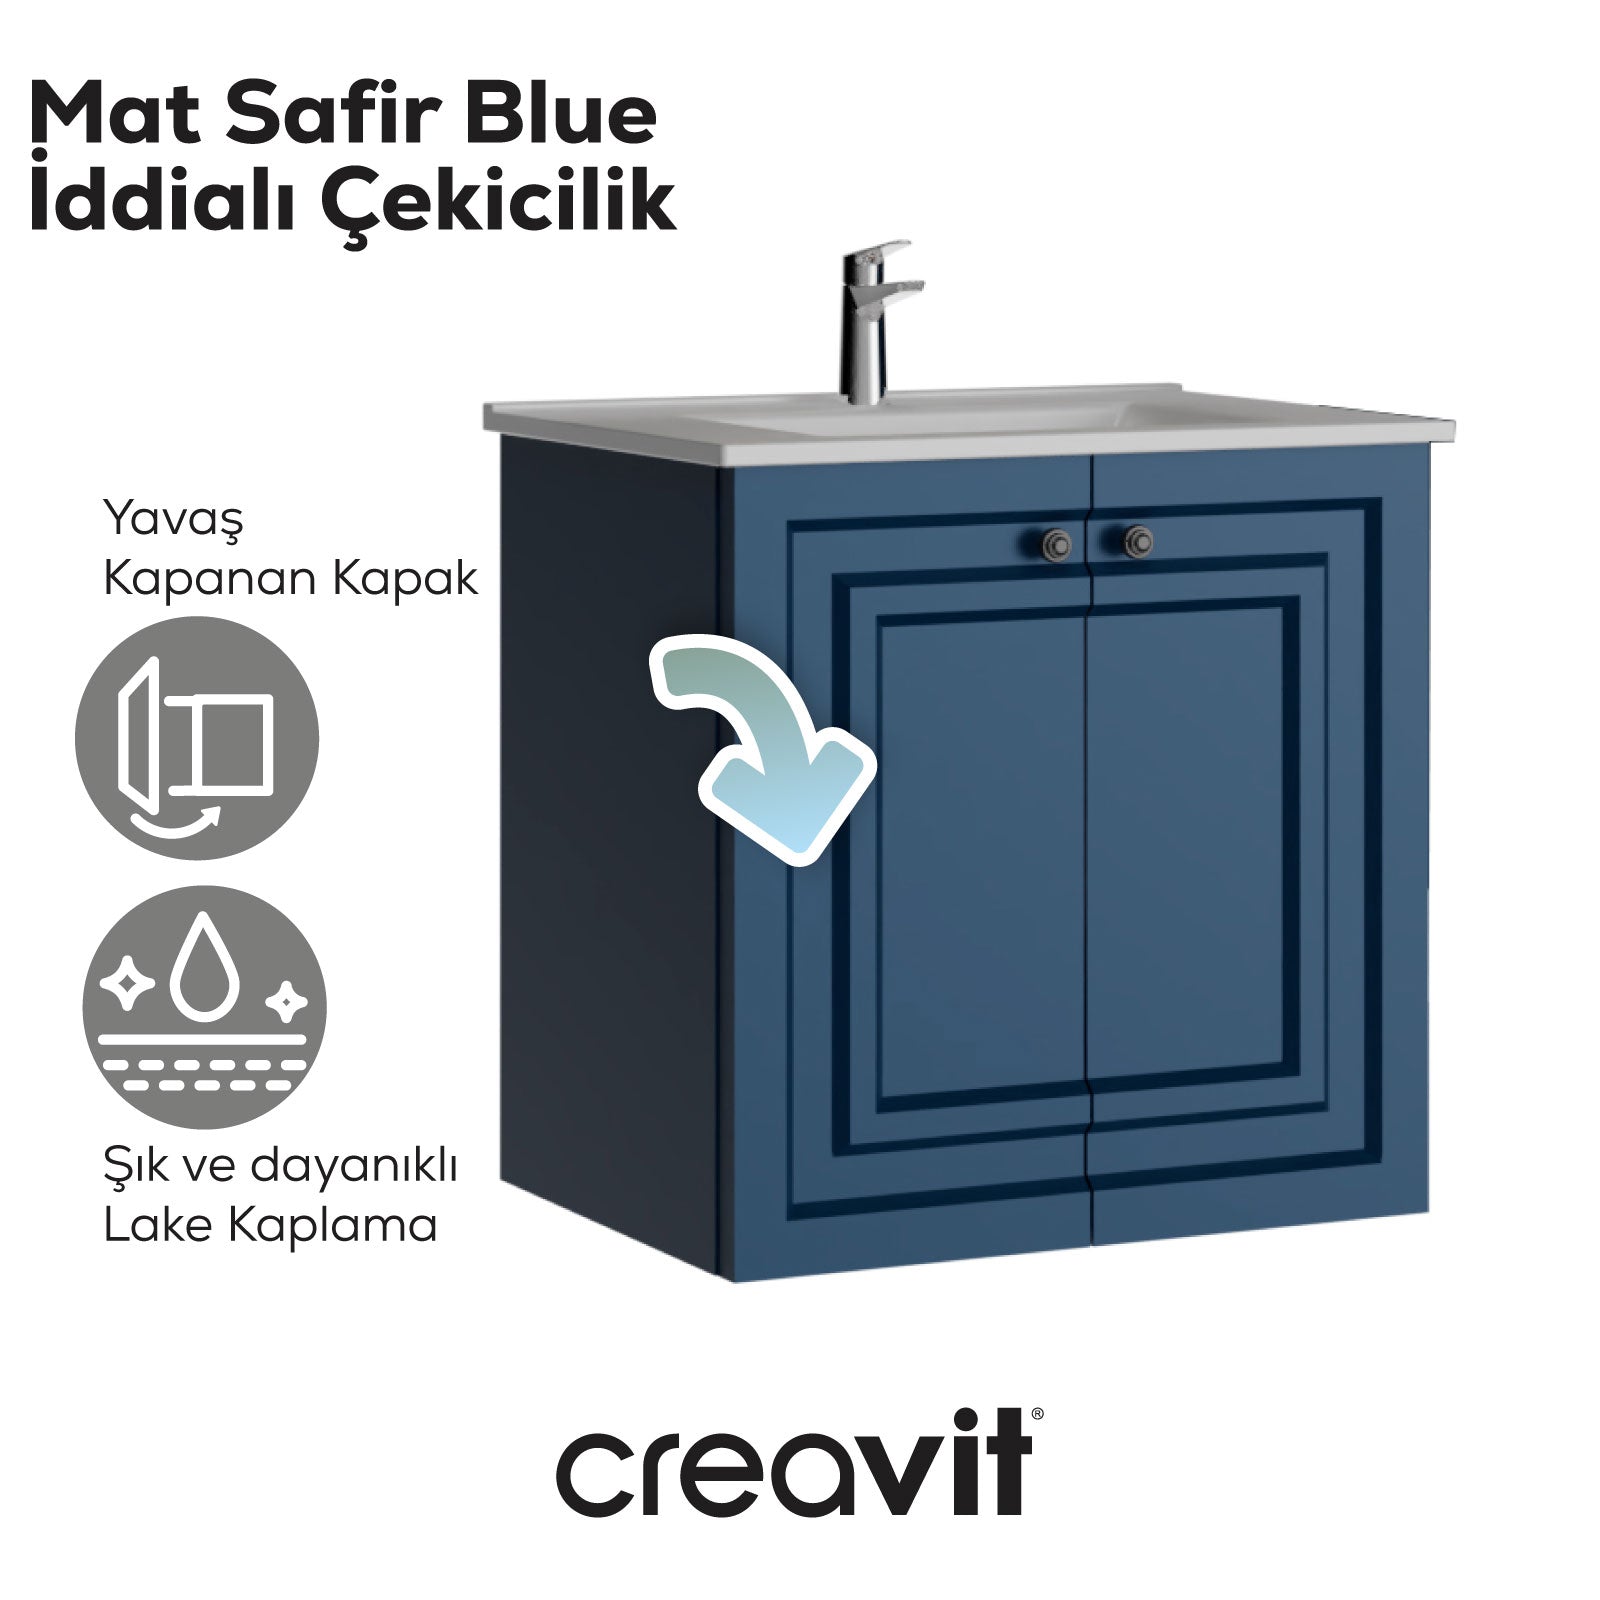 Kayra Mat Safir Blue Kapaklı Lavabo Dolabı 60 cm - Creavit | Banyo Bu Tarafta